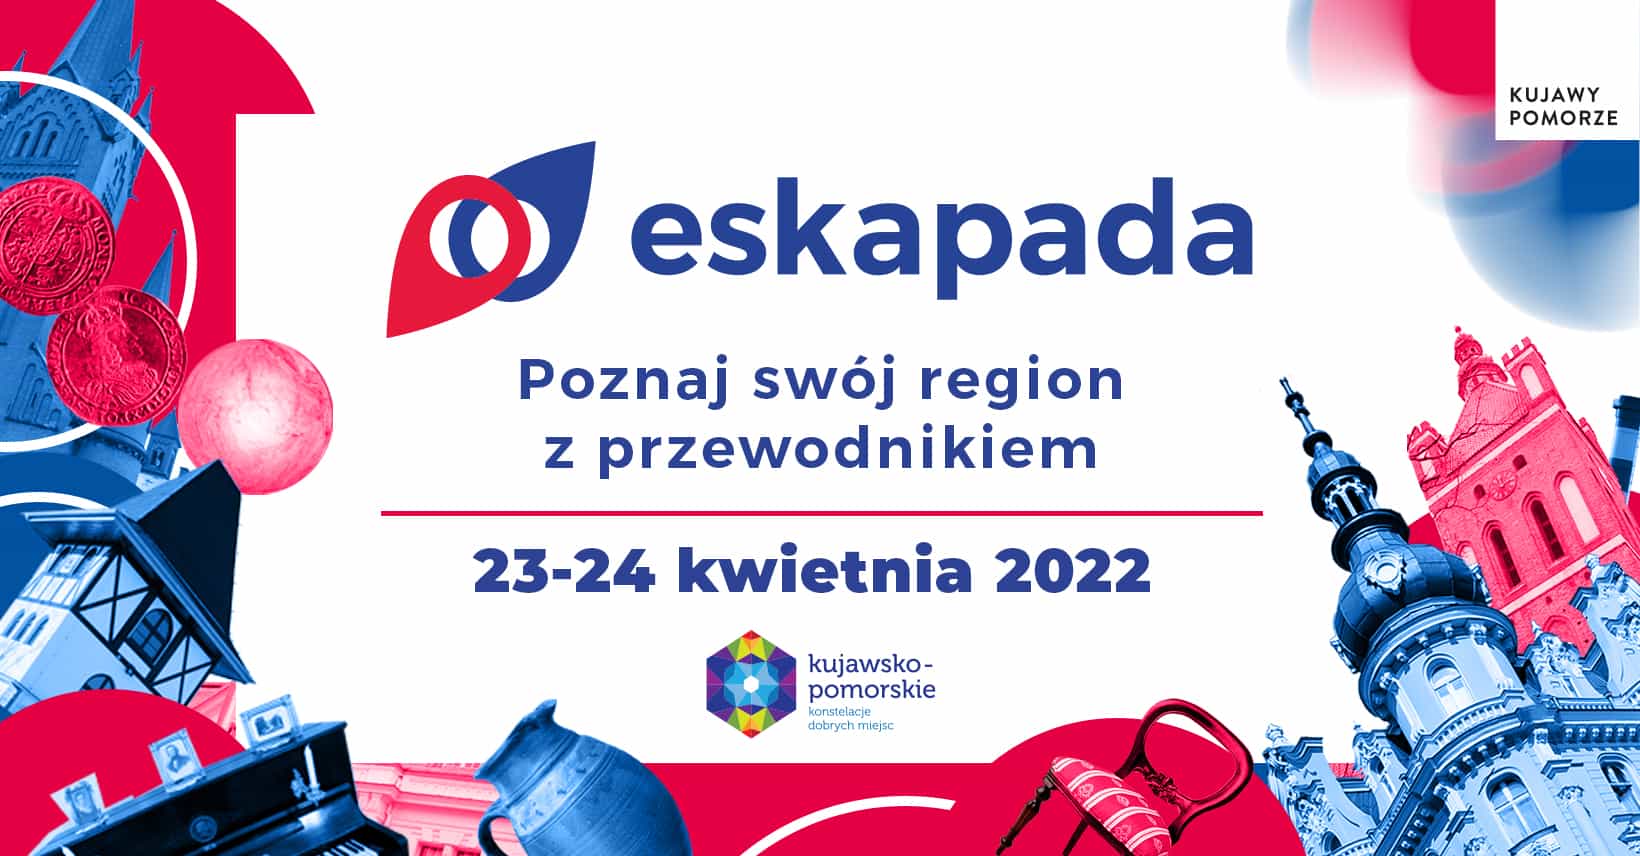 Eskapada. Poznaj swój region z przewodnikiem 23-24.04.2022